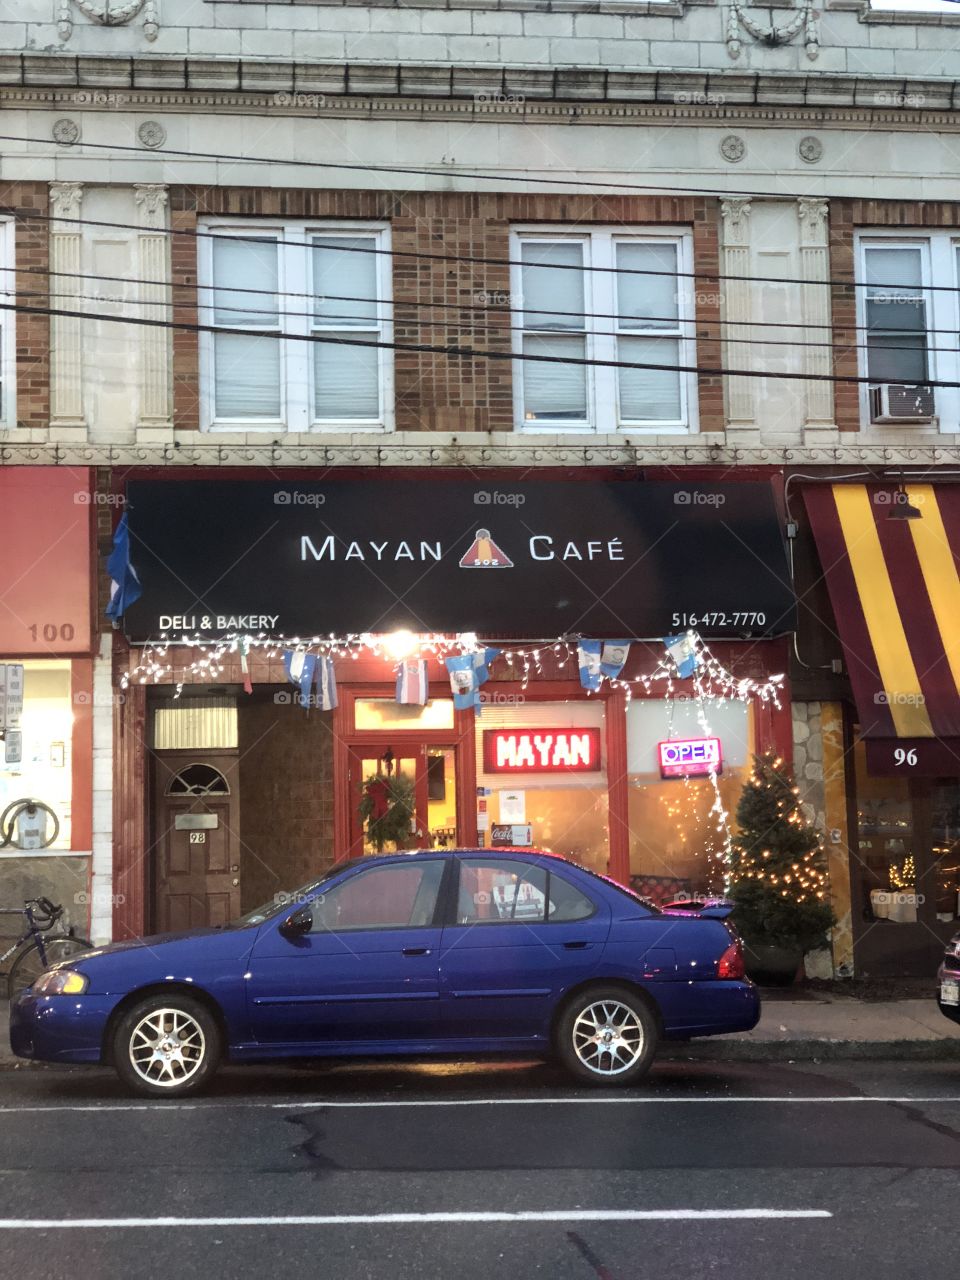 Mayan cafe nyc